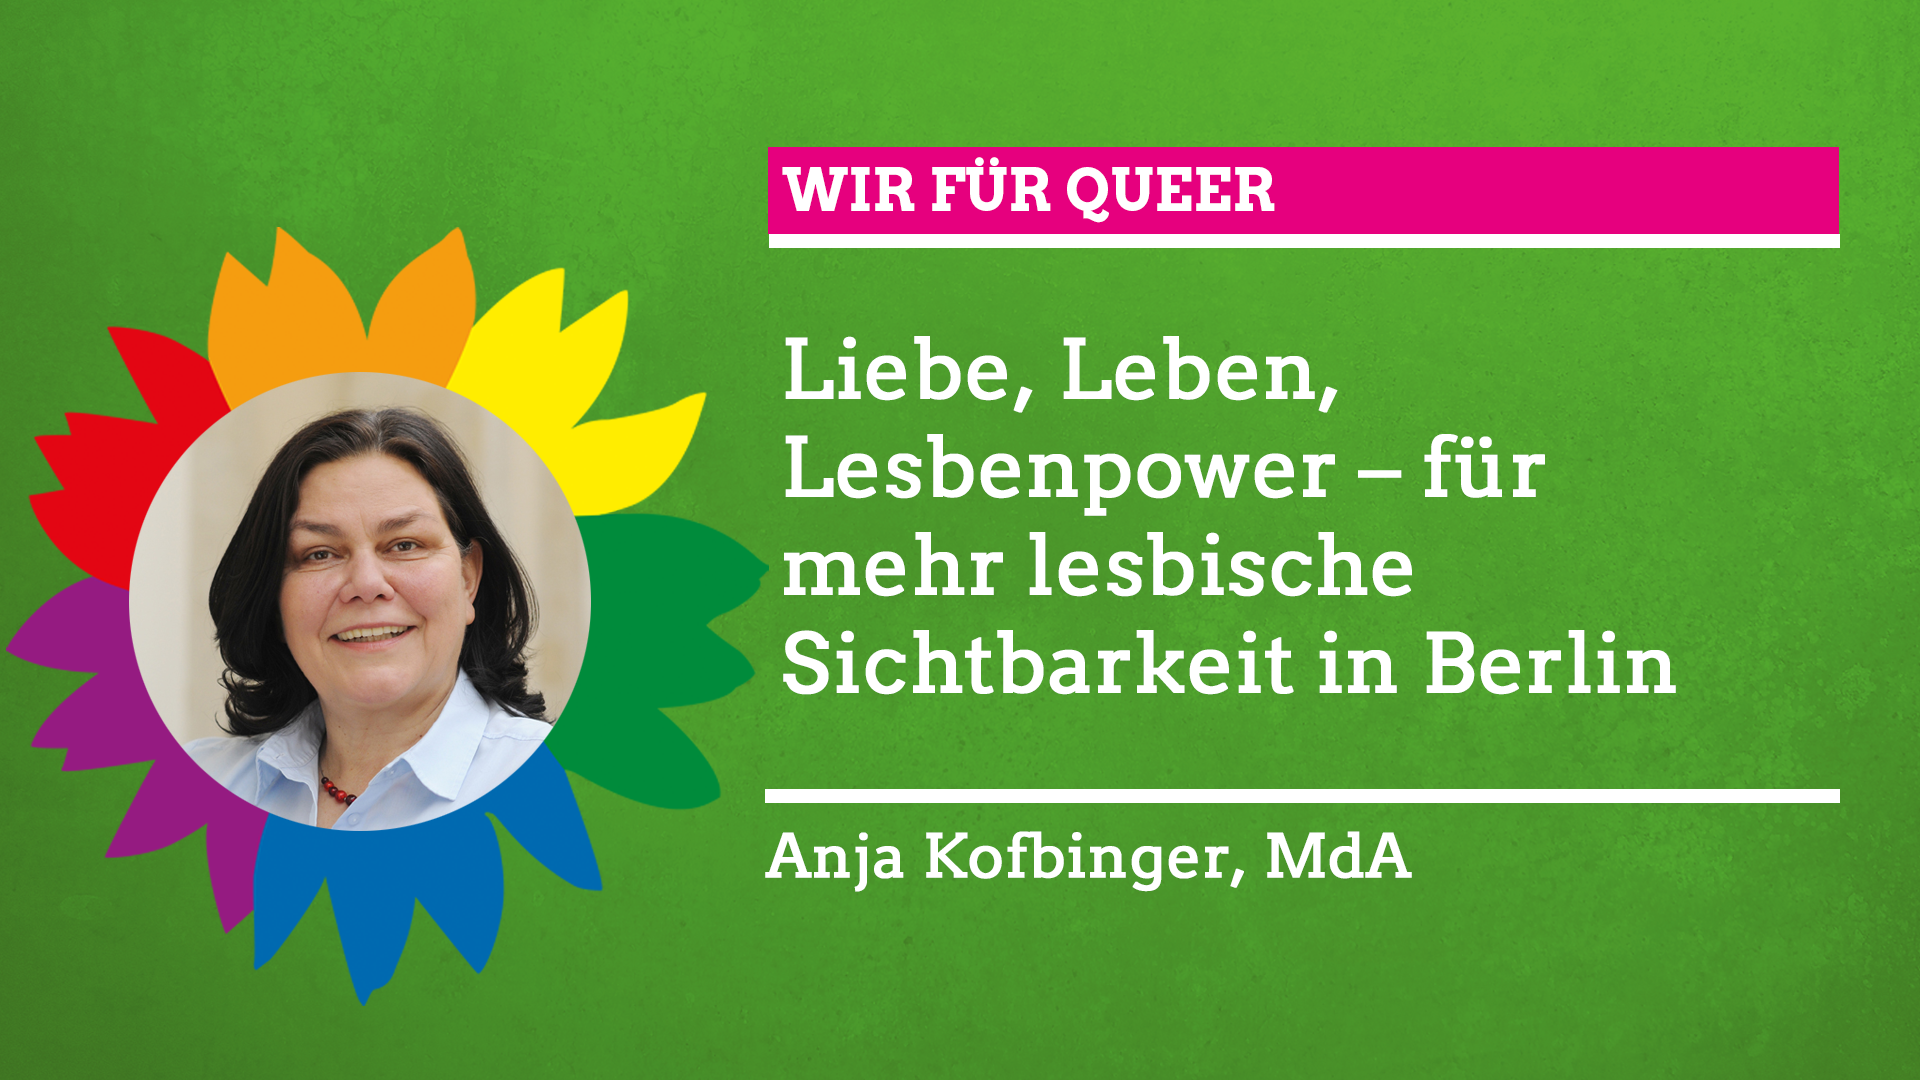 Anja Kofbinger sagt im Rahmen unserer Grünen Regenbogenwochen: "Wir für Queer!"